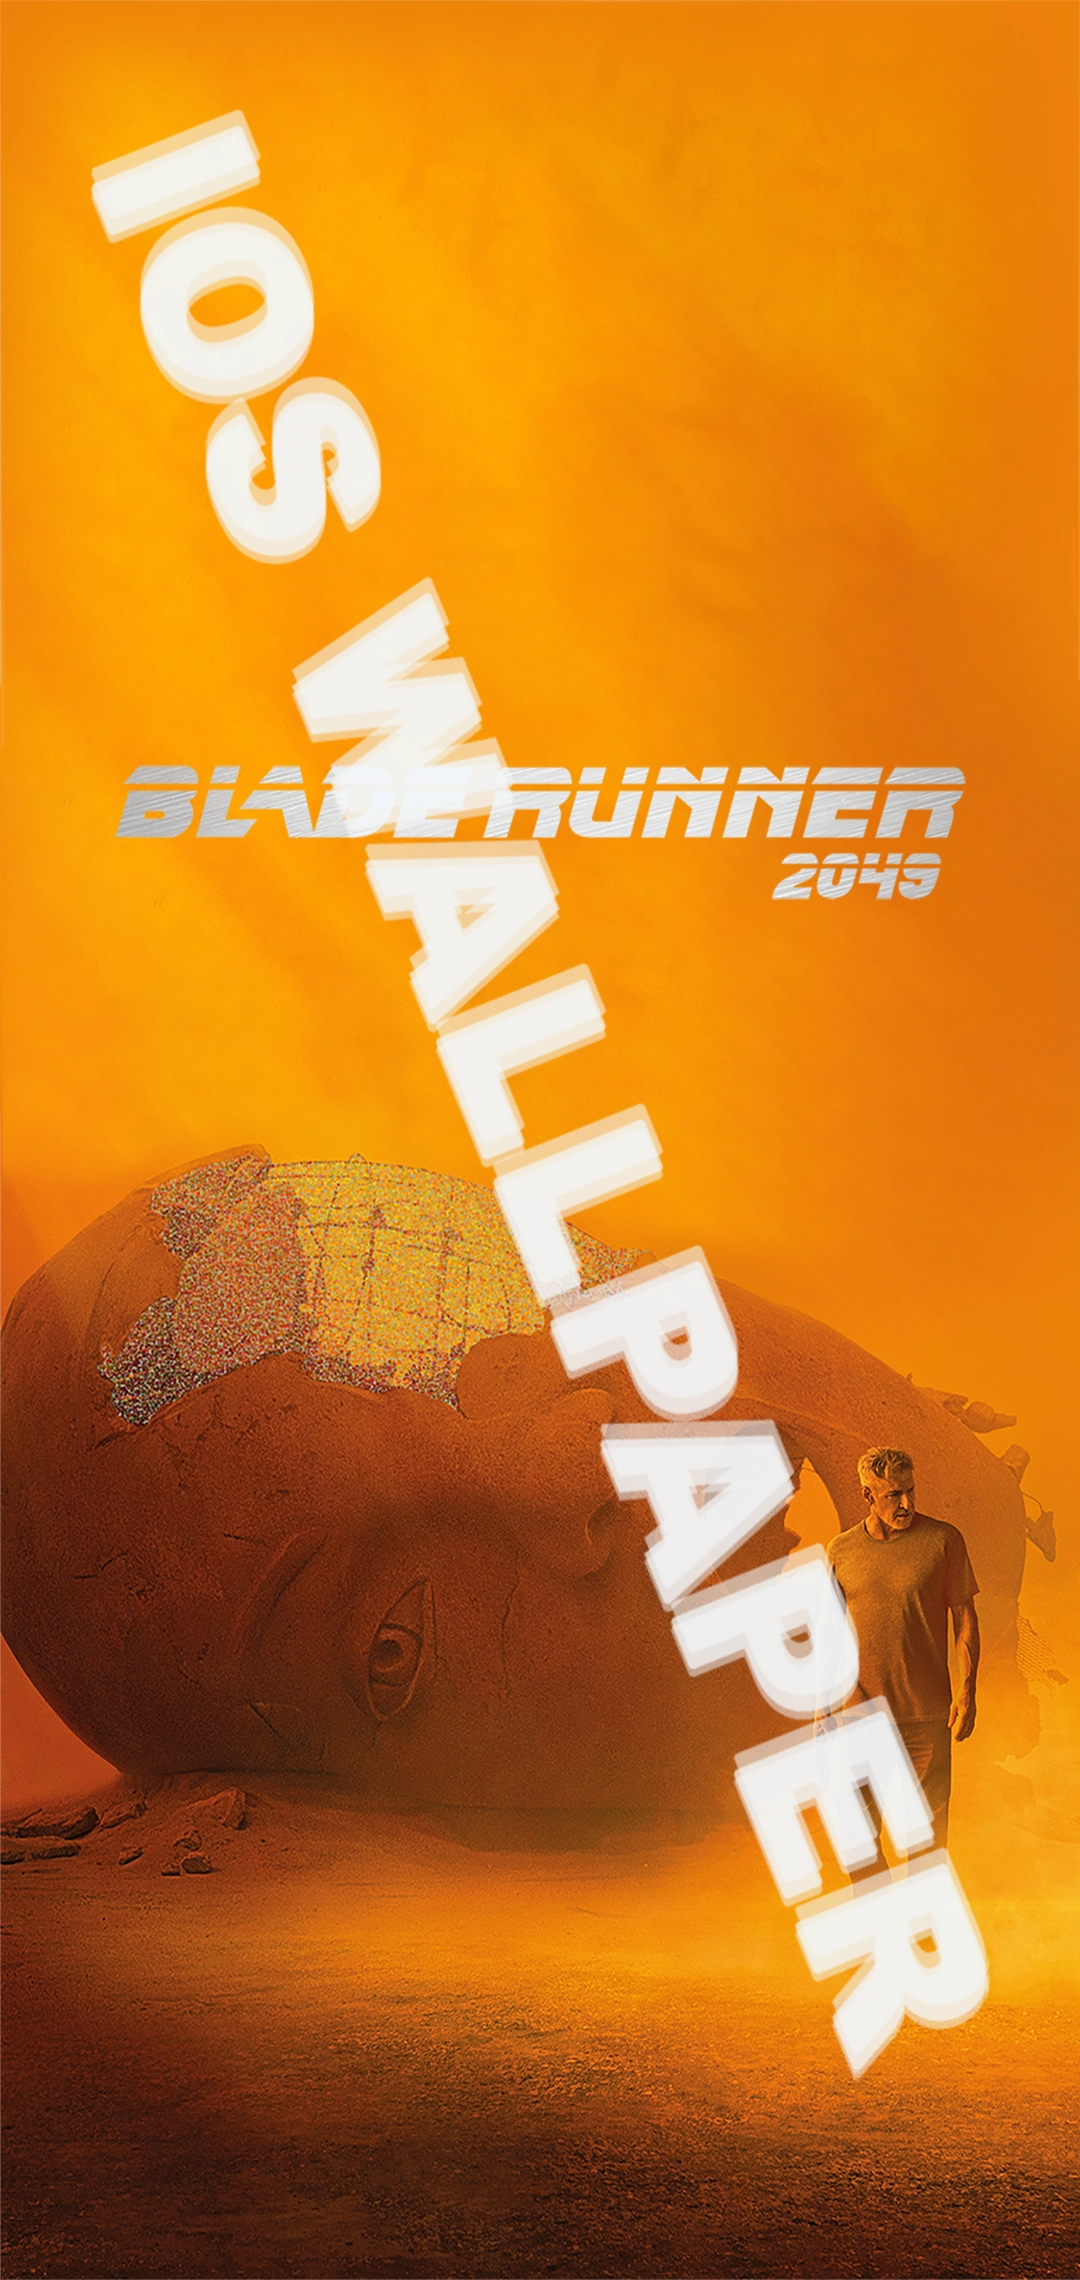 Blade Runner 2049 - Harrison Ford | Digital Download